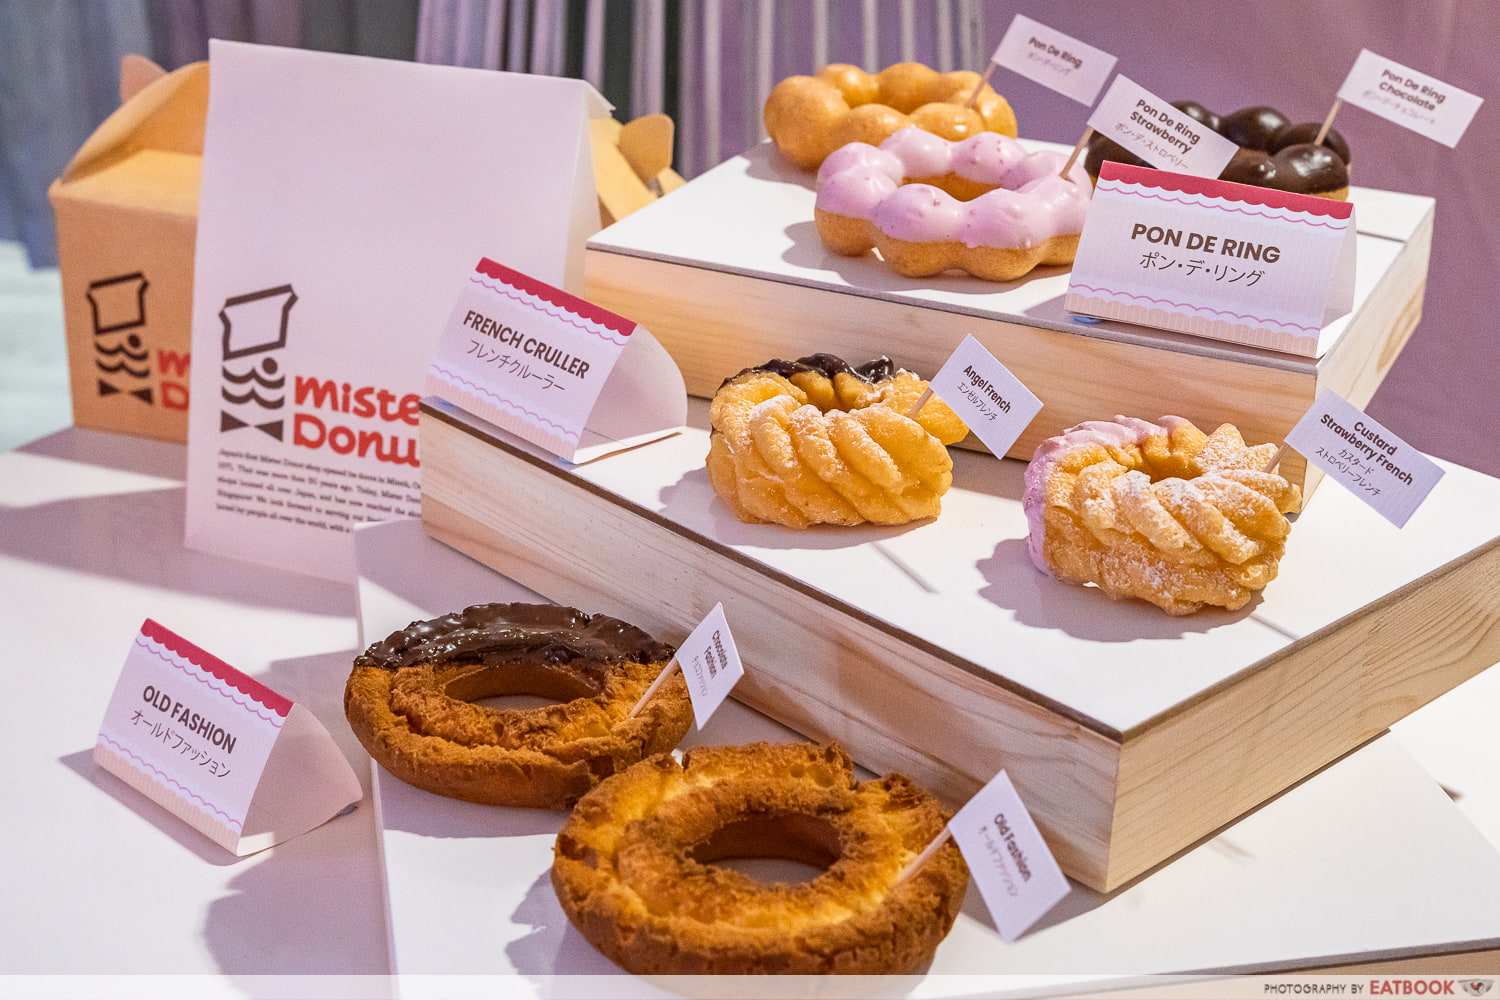 Mister Donut To Open Cafe In Novena In July 2023 | Eatbook.sg